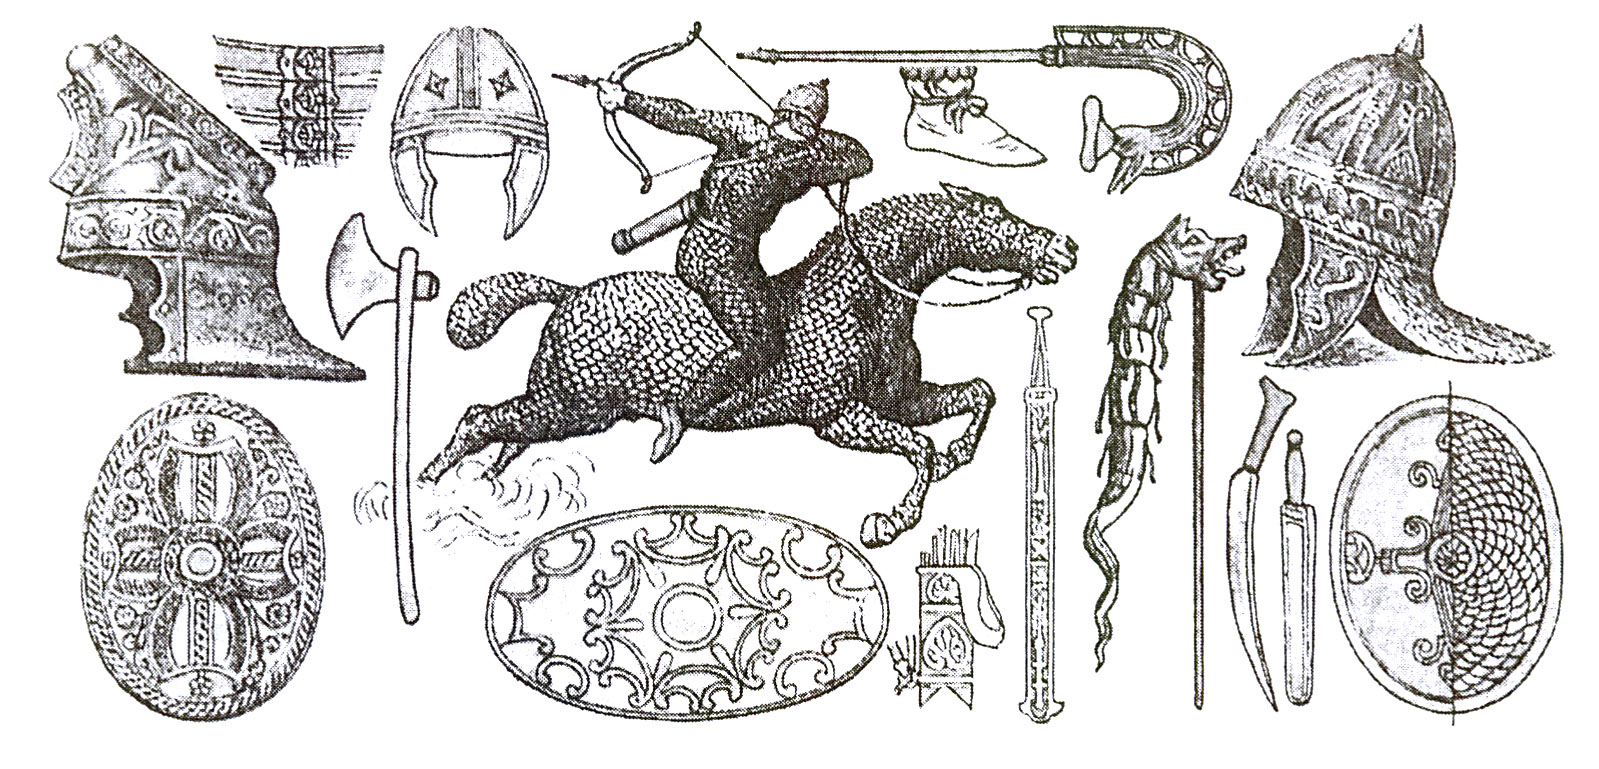 Сарматский конный воин и его боевое снаряжение